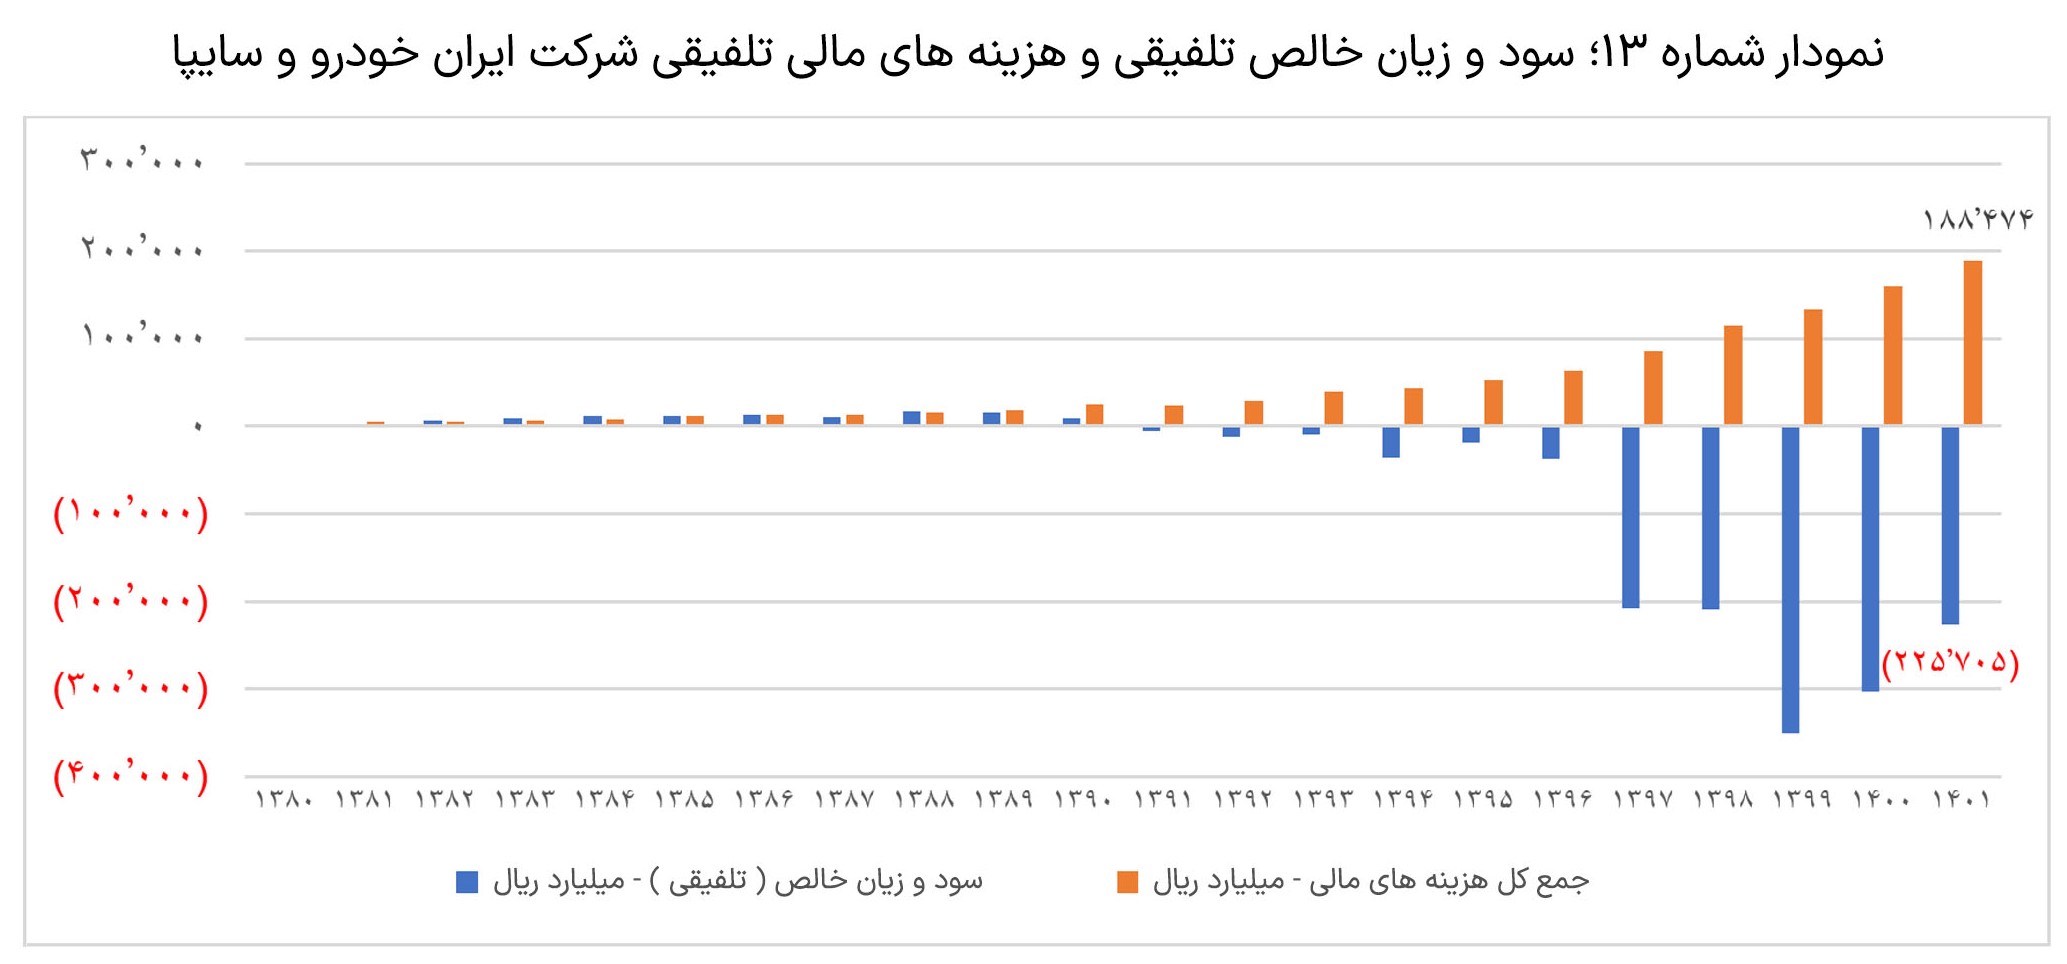 بررسی-عملکرد-دو-شرکت-ایران-خودرو-و-سایپا5-3-slide-06.jpg